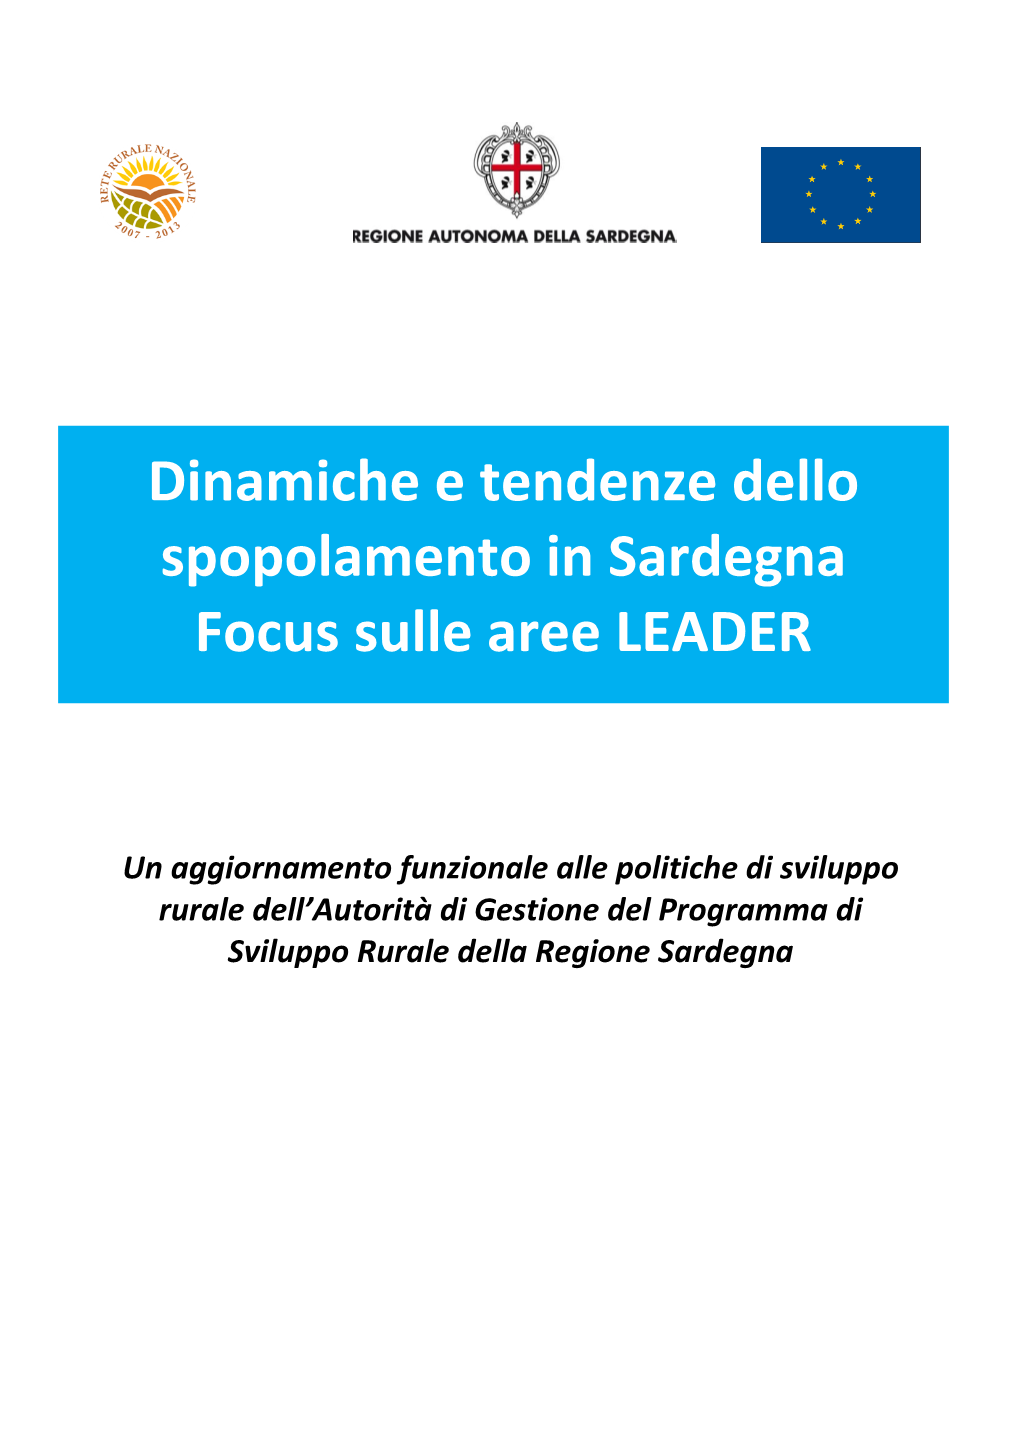 Dinamiche E Tendenze Dello Spopolamento in Sardegna”